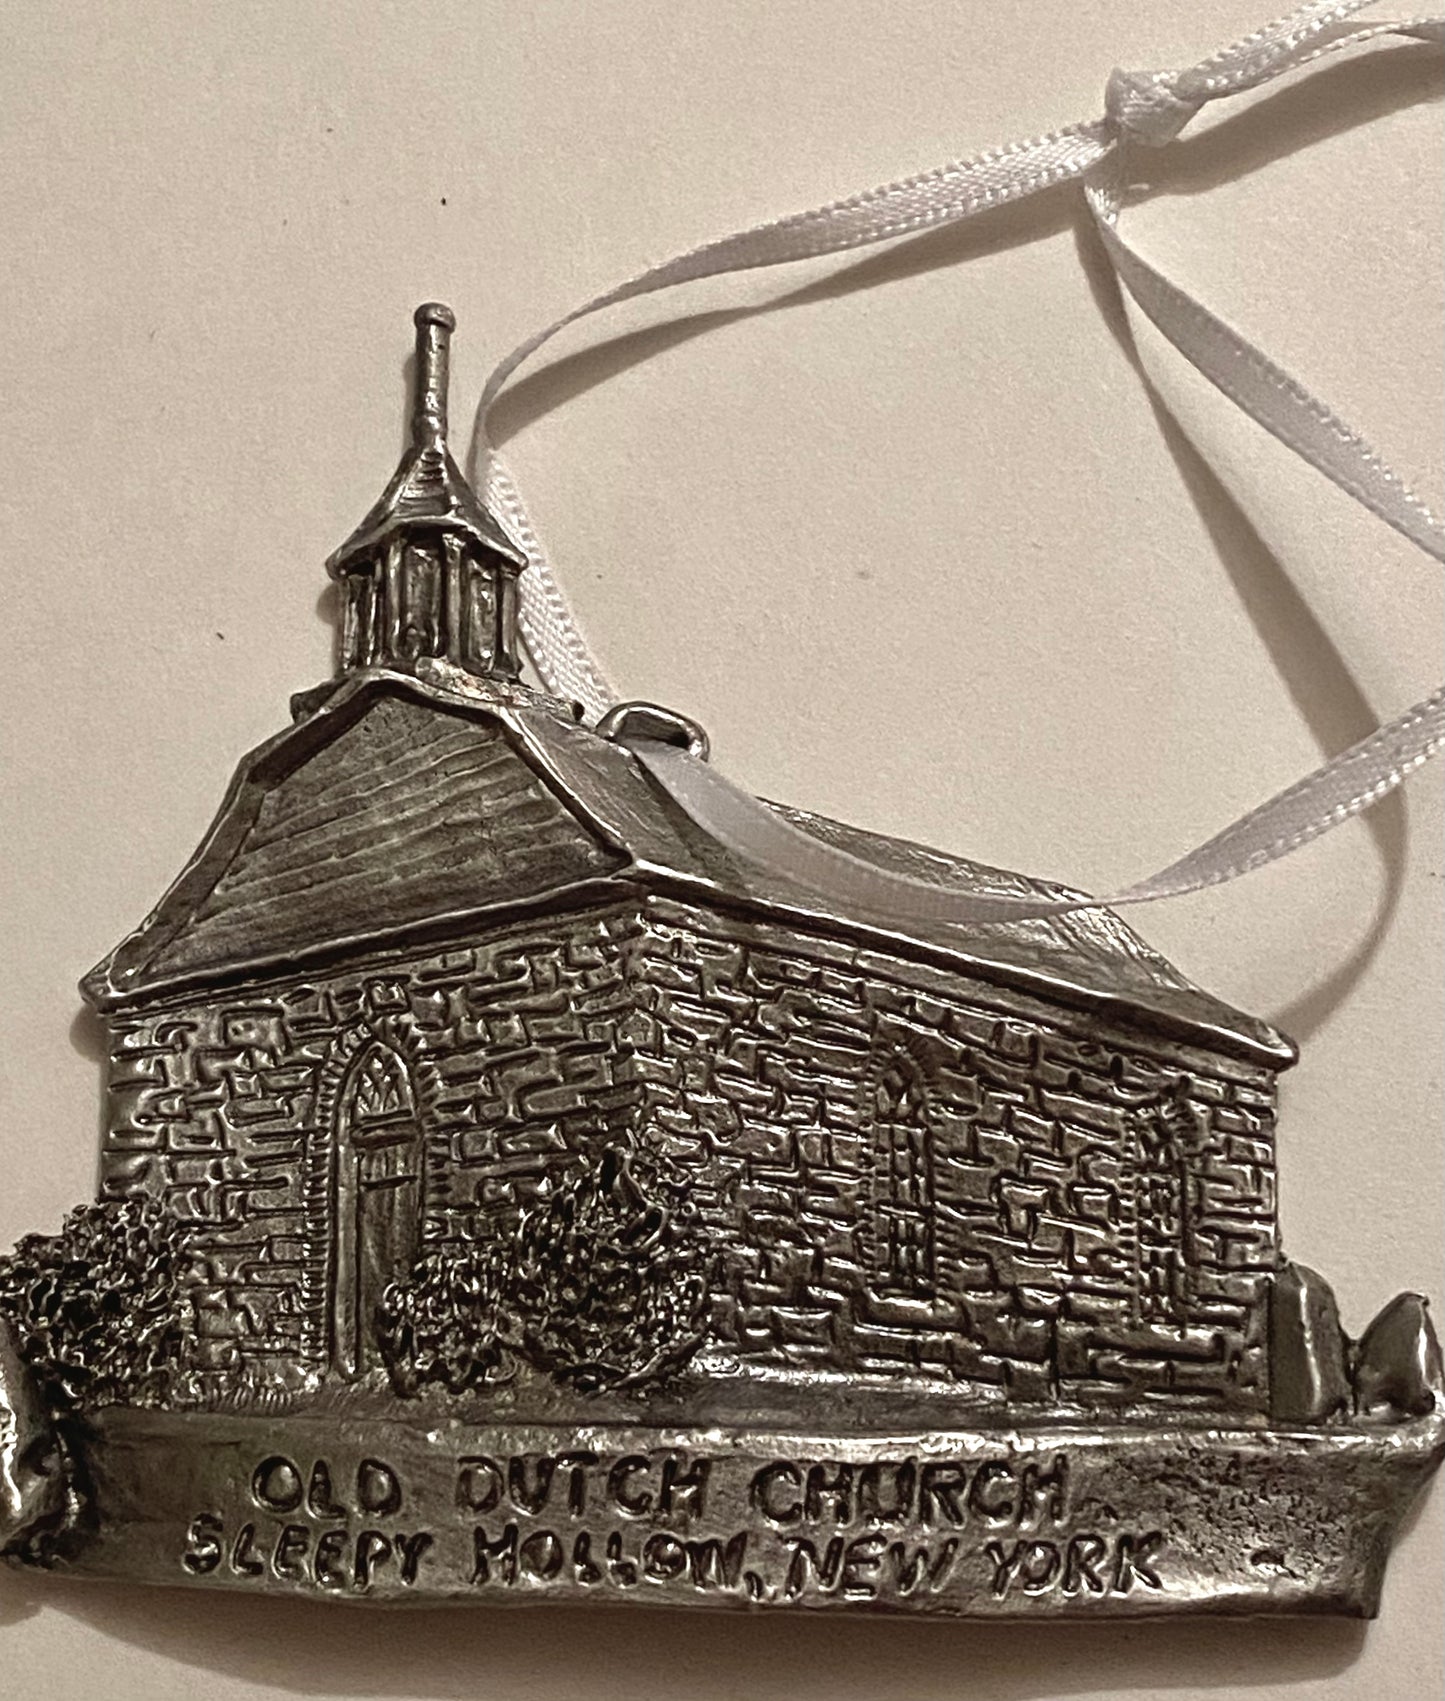 Pewter Old Dutch Church Ornament